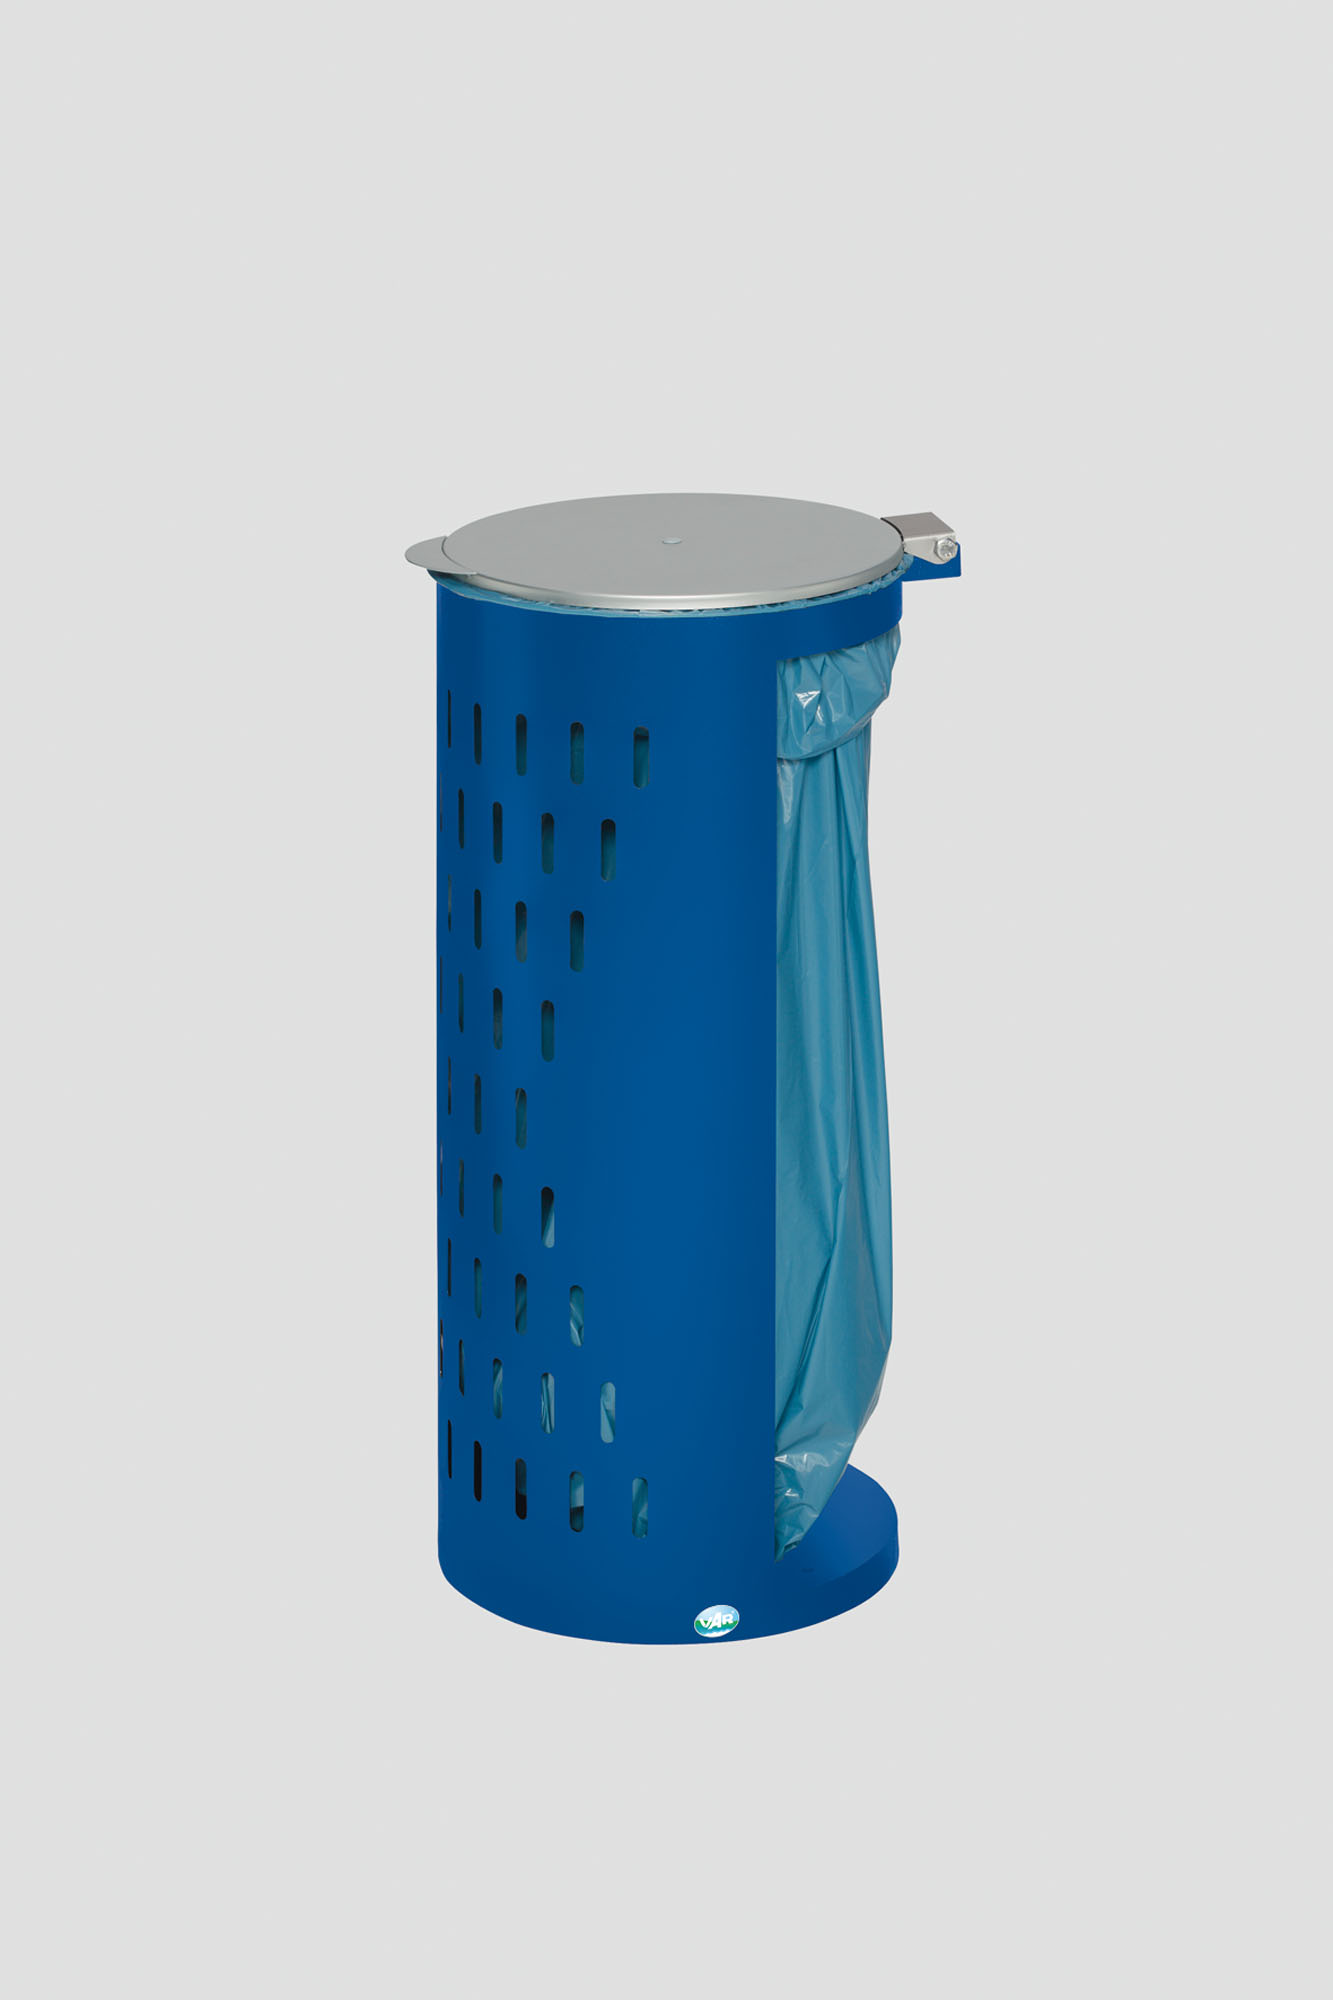 Kompakter Abfallsammler gelocht mit Deckel | 35cm Einfüllöffnung | HxBxT 85x44x44cm | Stahl | Blau